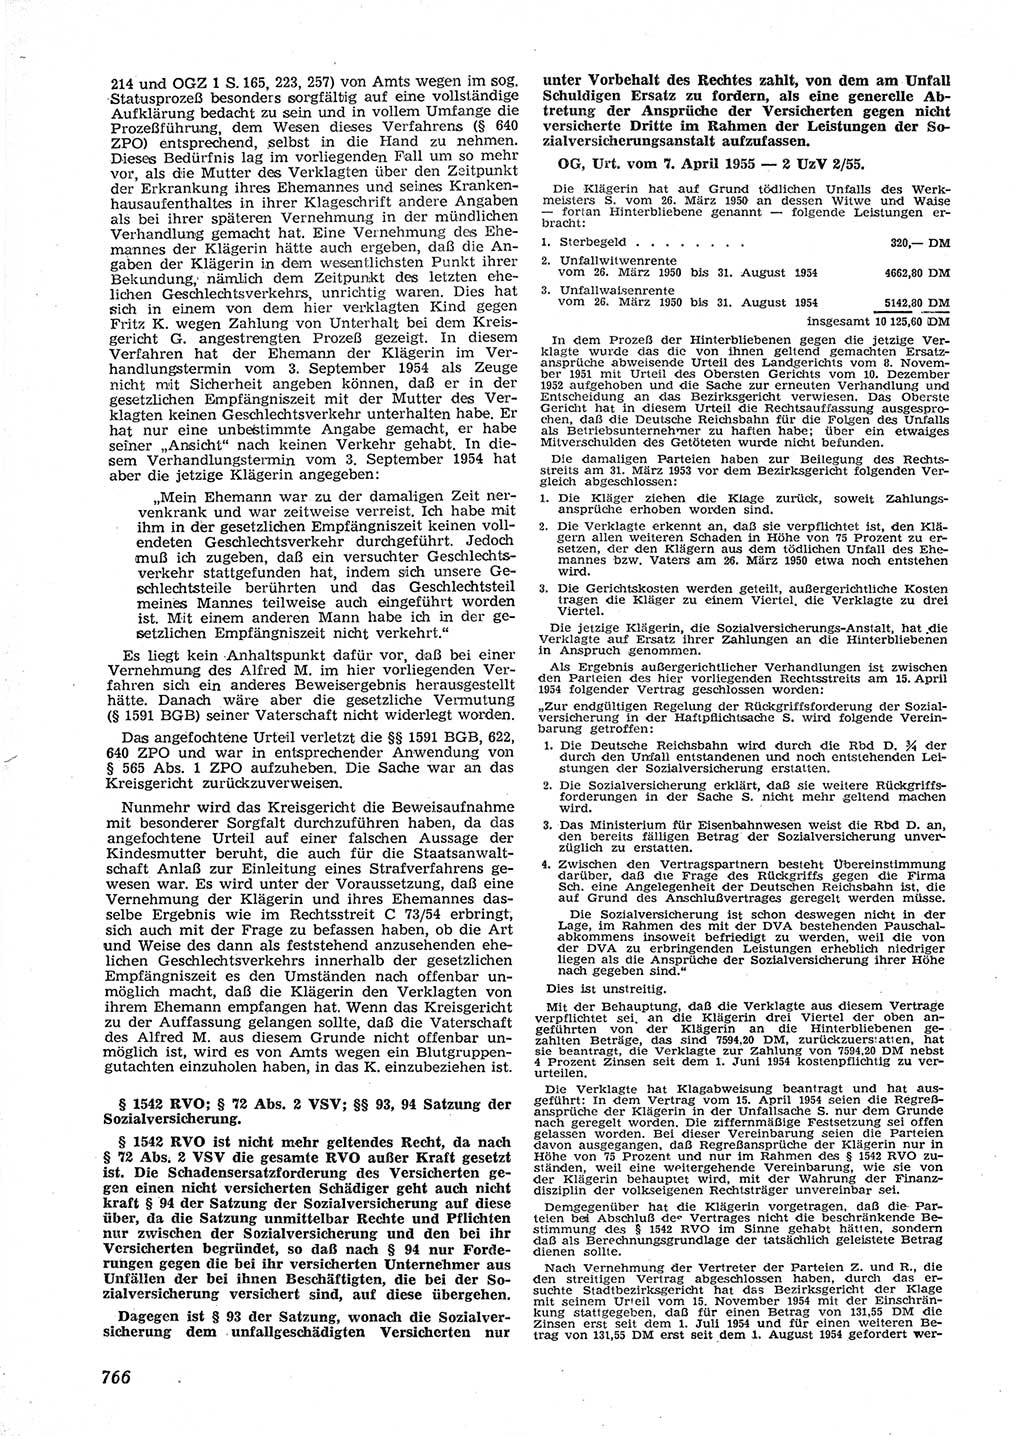 Neue Justiz (NJ), Zeitschrift für Recht und Rechtswissenschaft [Deutsche Demokratische Republik (DDR)], 9. Jahrgang 1955, Seite 766 (NJ DDR 1955, S. 766)